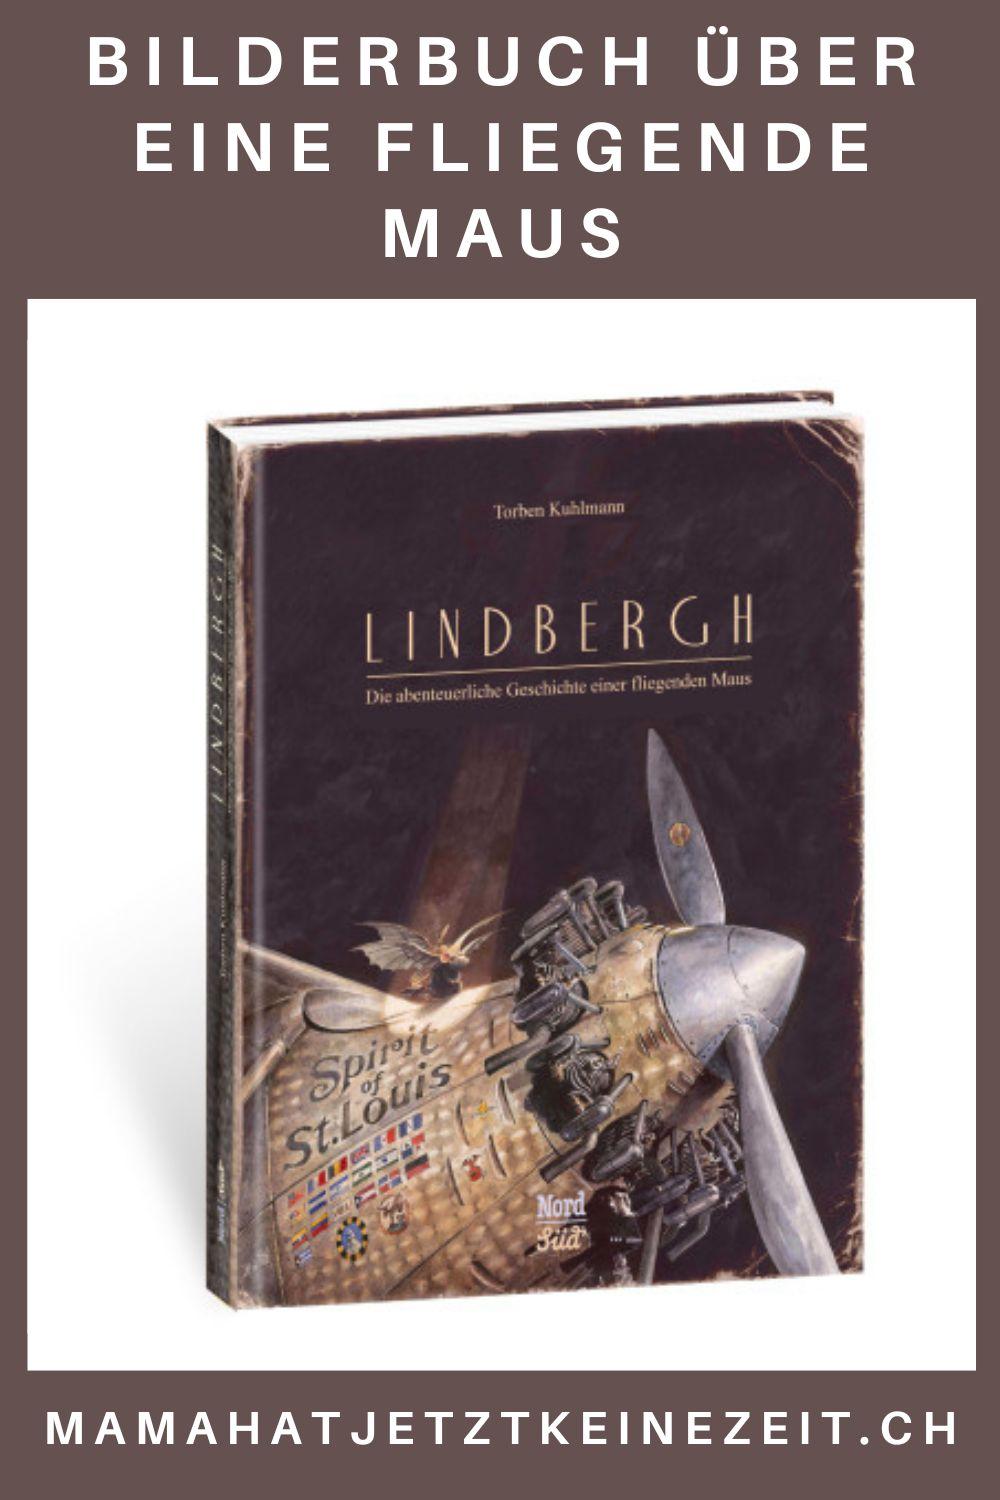 "Lindbergh" von Torben Kuhlmann